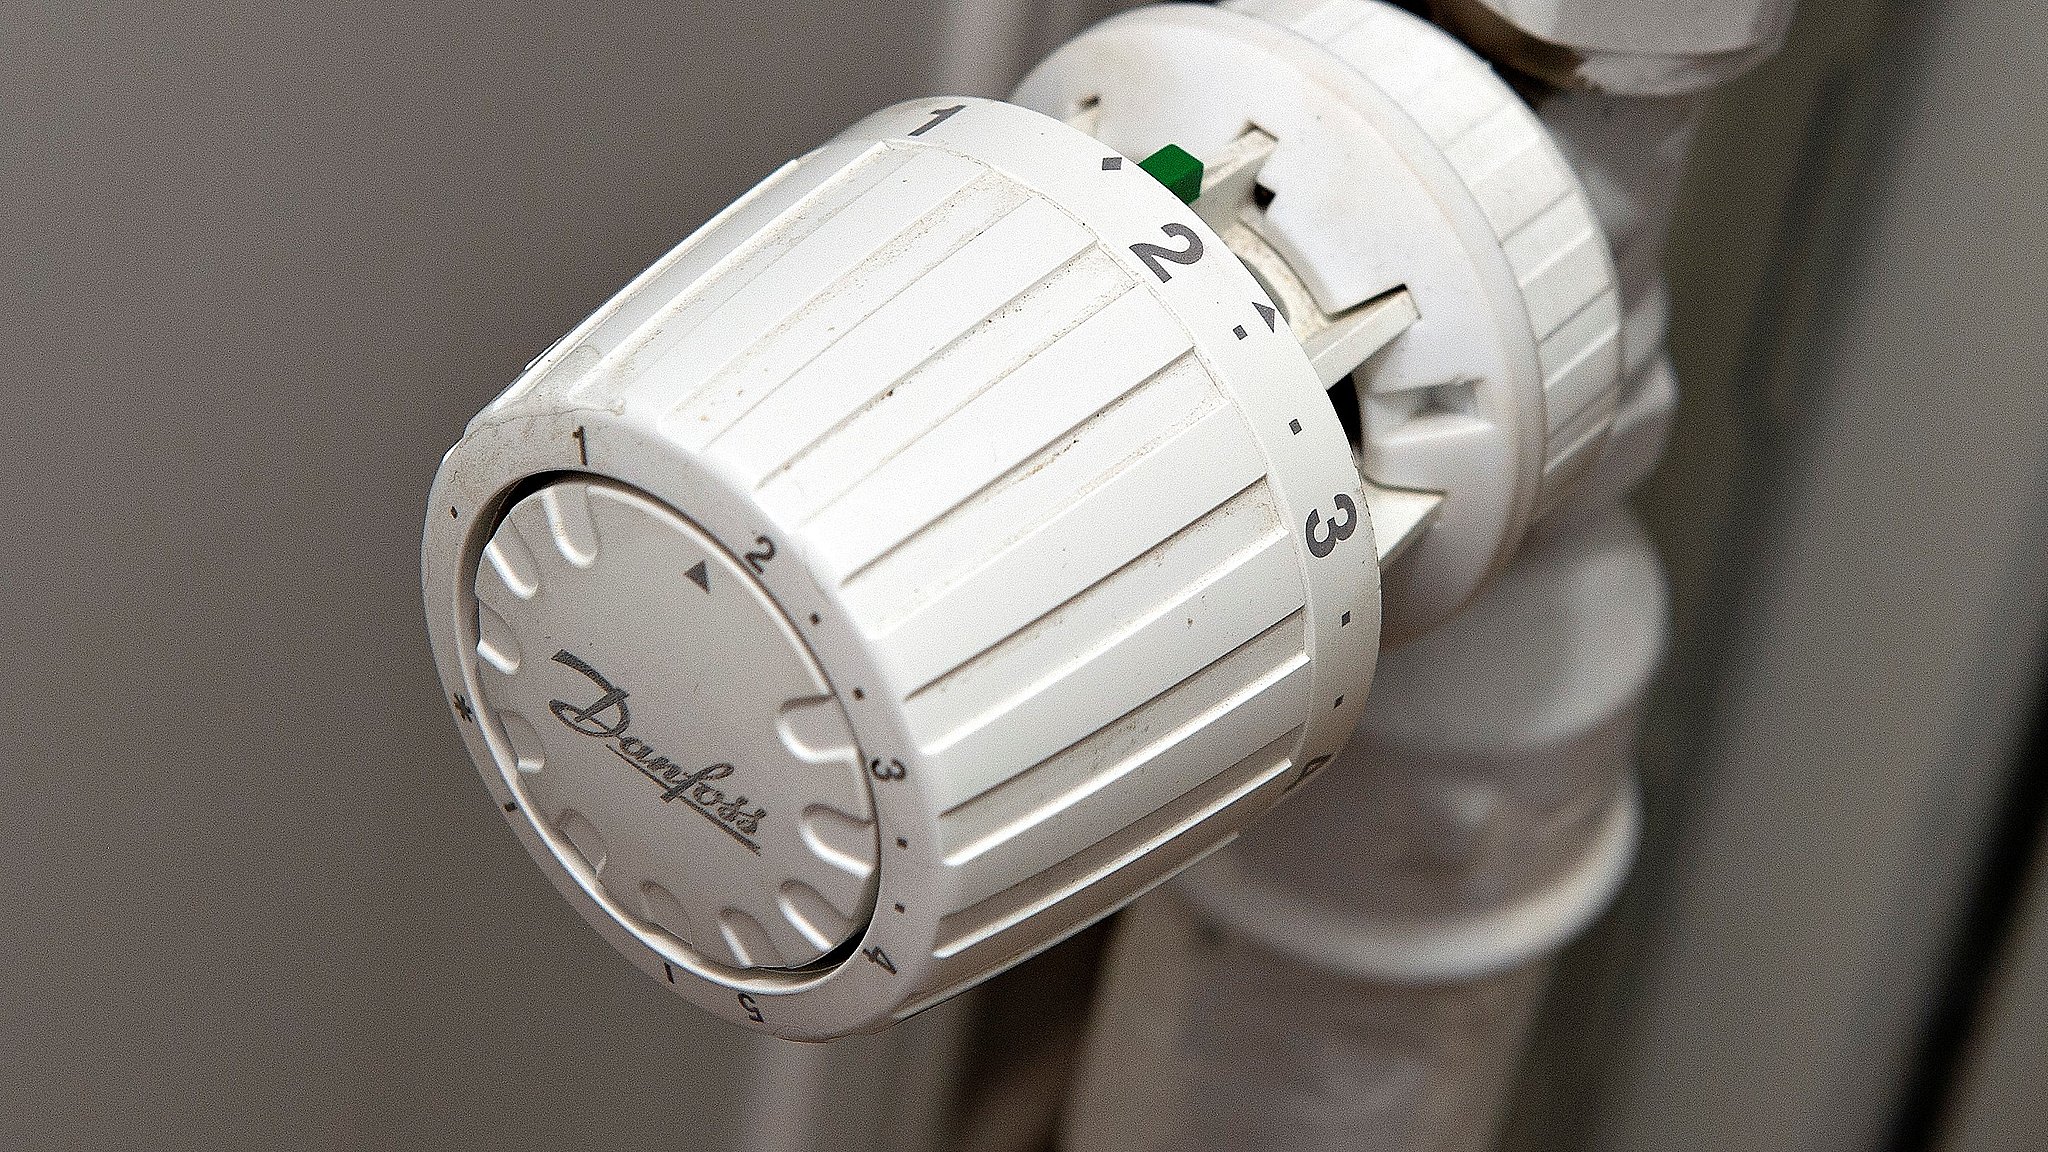 Danfoss skruer ned termostaterne | SYD